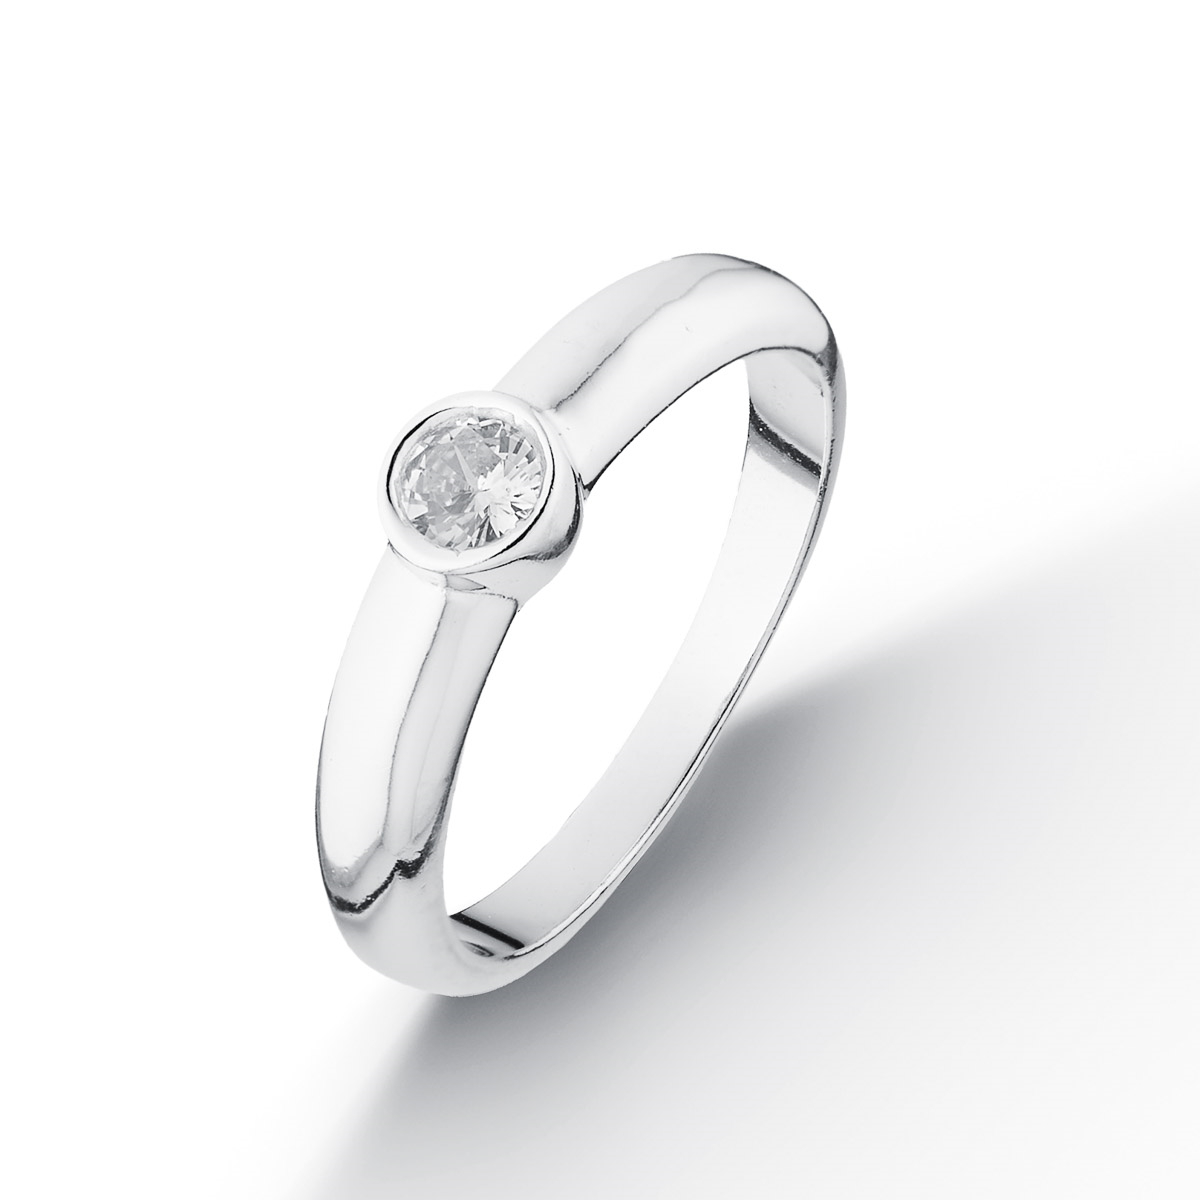 NUBIS® Stříbrný prsten se zirkonem - velikost 56 - NB-5092-56